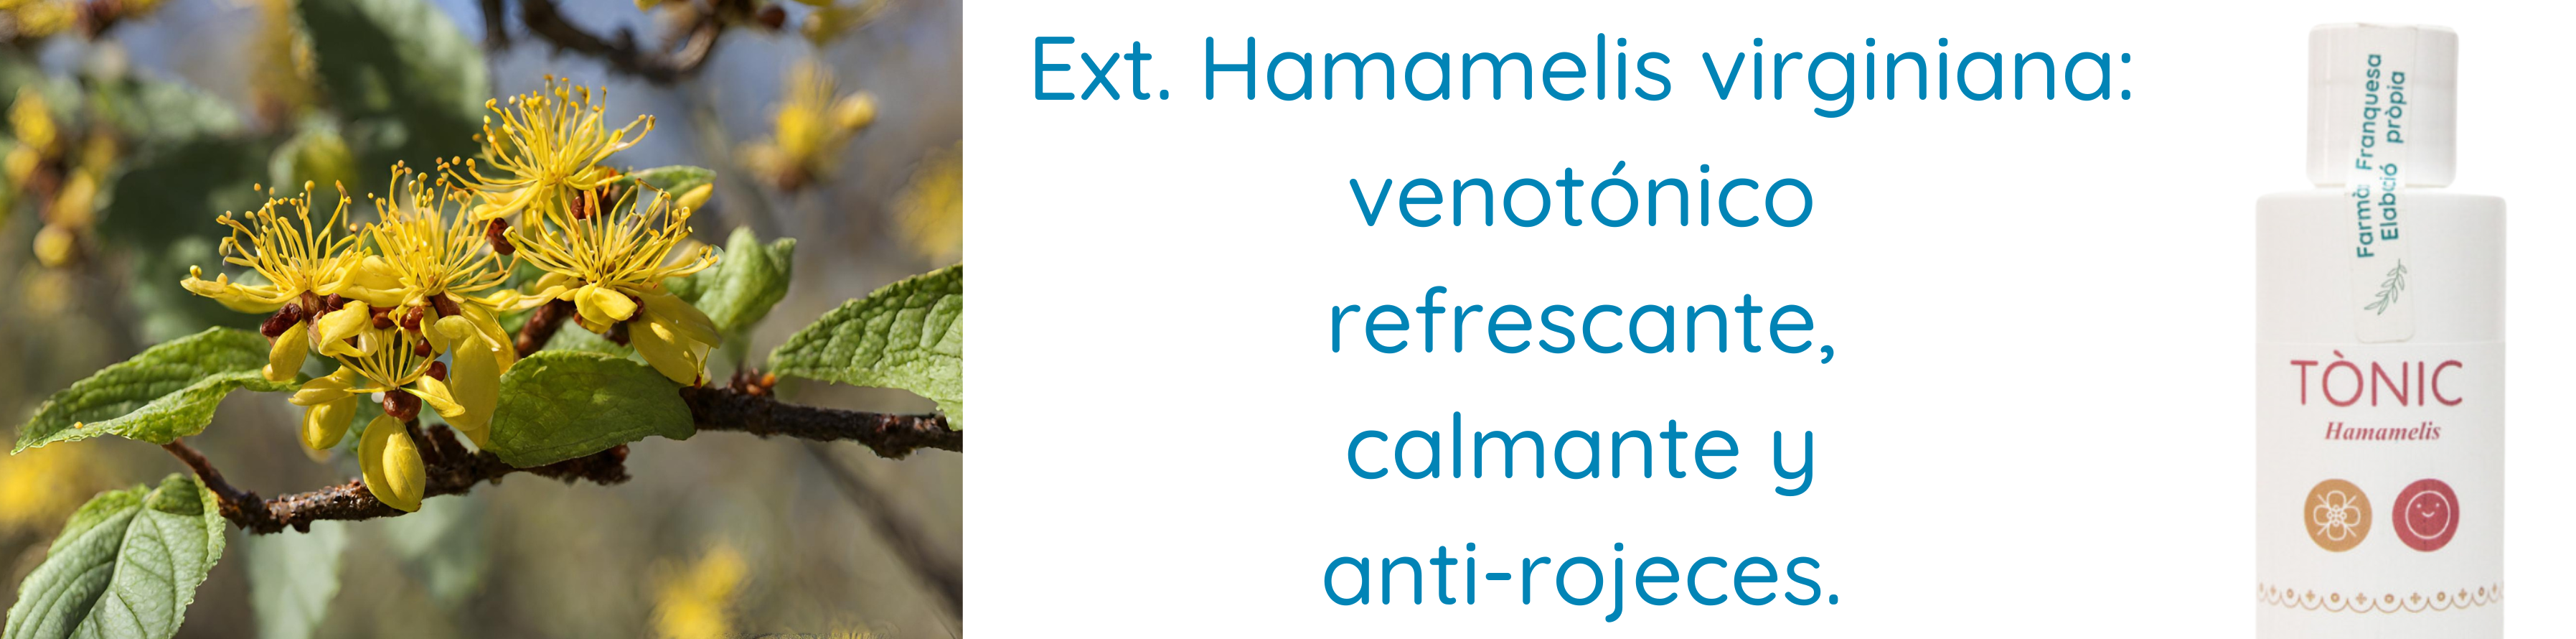 Extracto Hamamelis virginiana con propiedades refrescantes, calmante, anti-rojeces, venotónico.